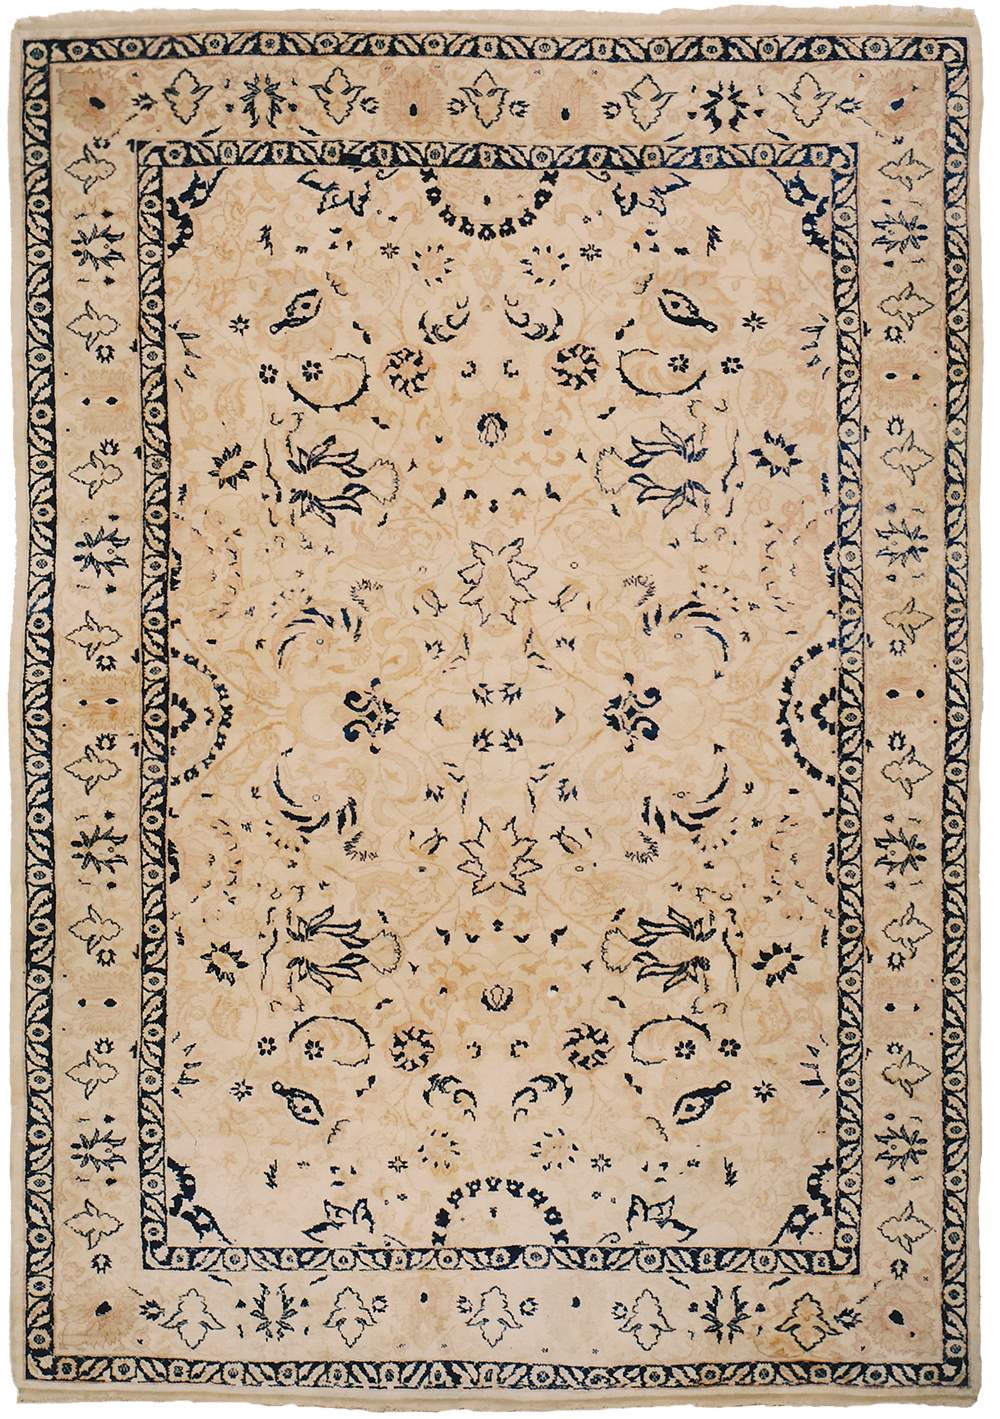 Oushak carpet